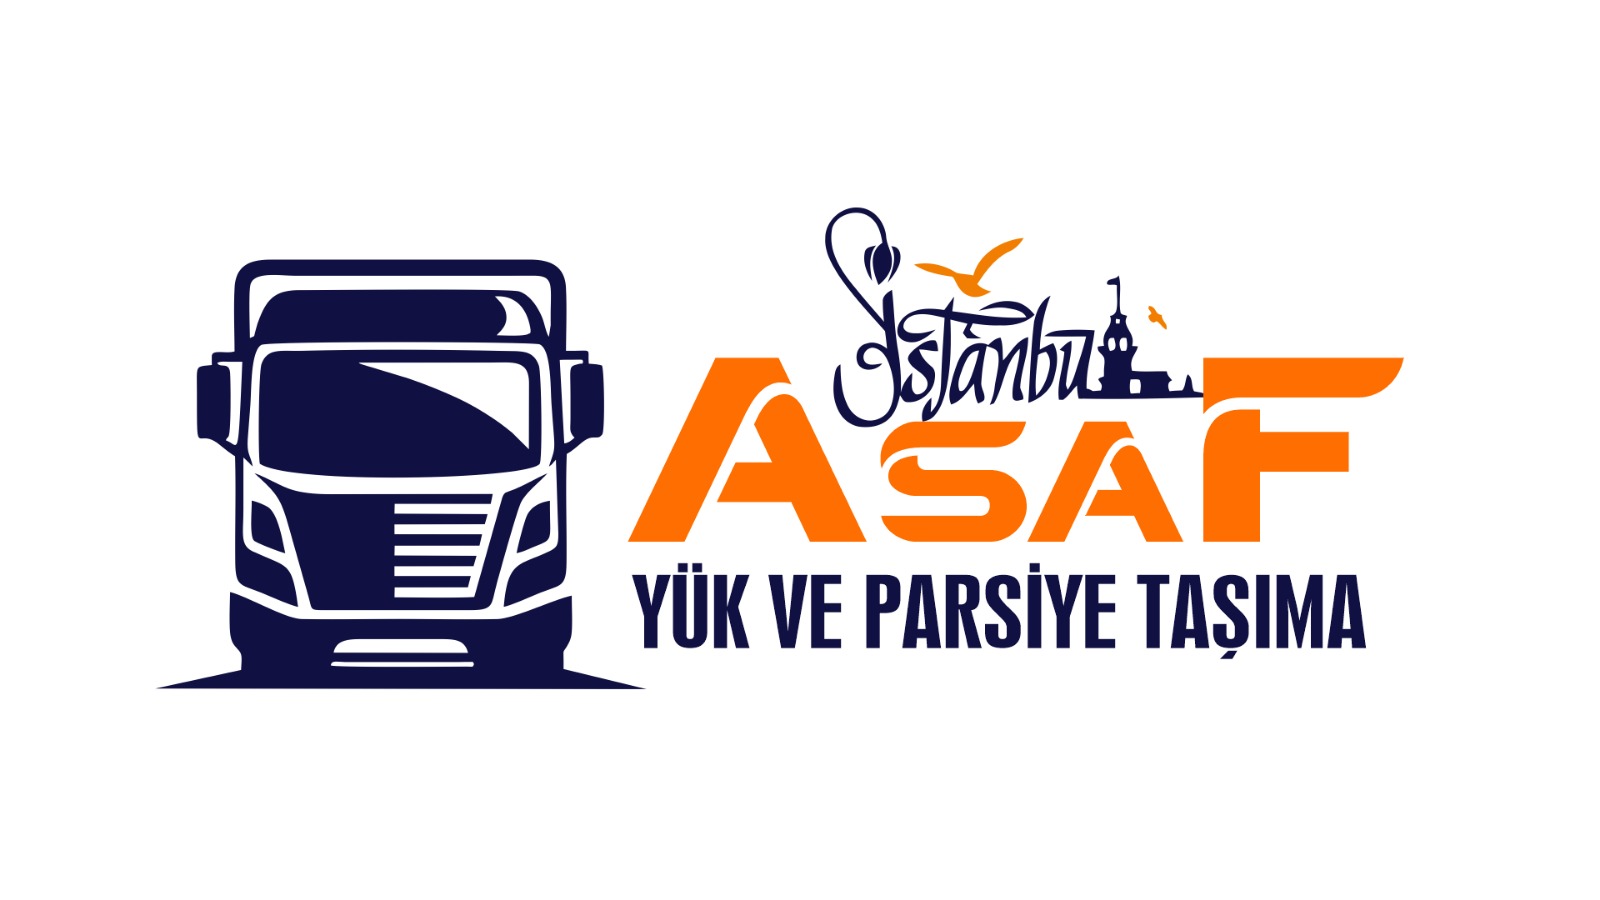 İstanbul Asaf Nakliyat